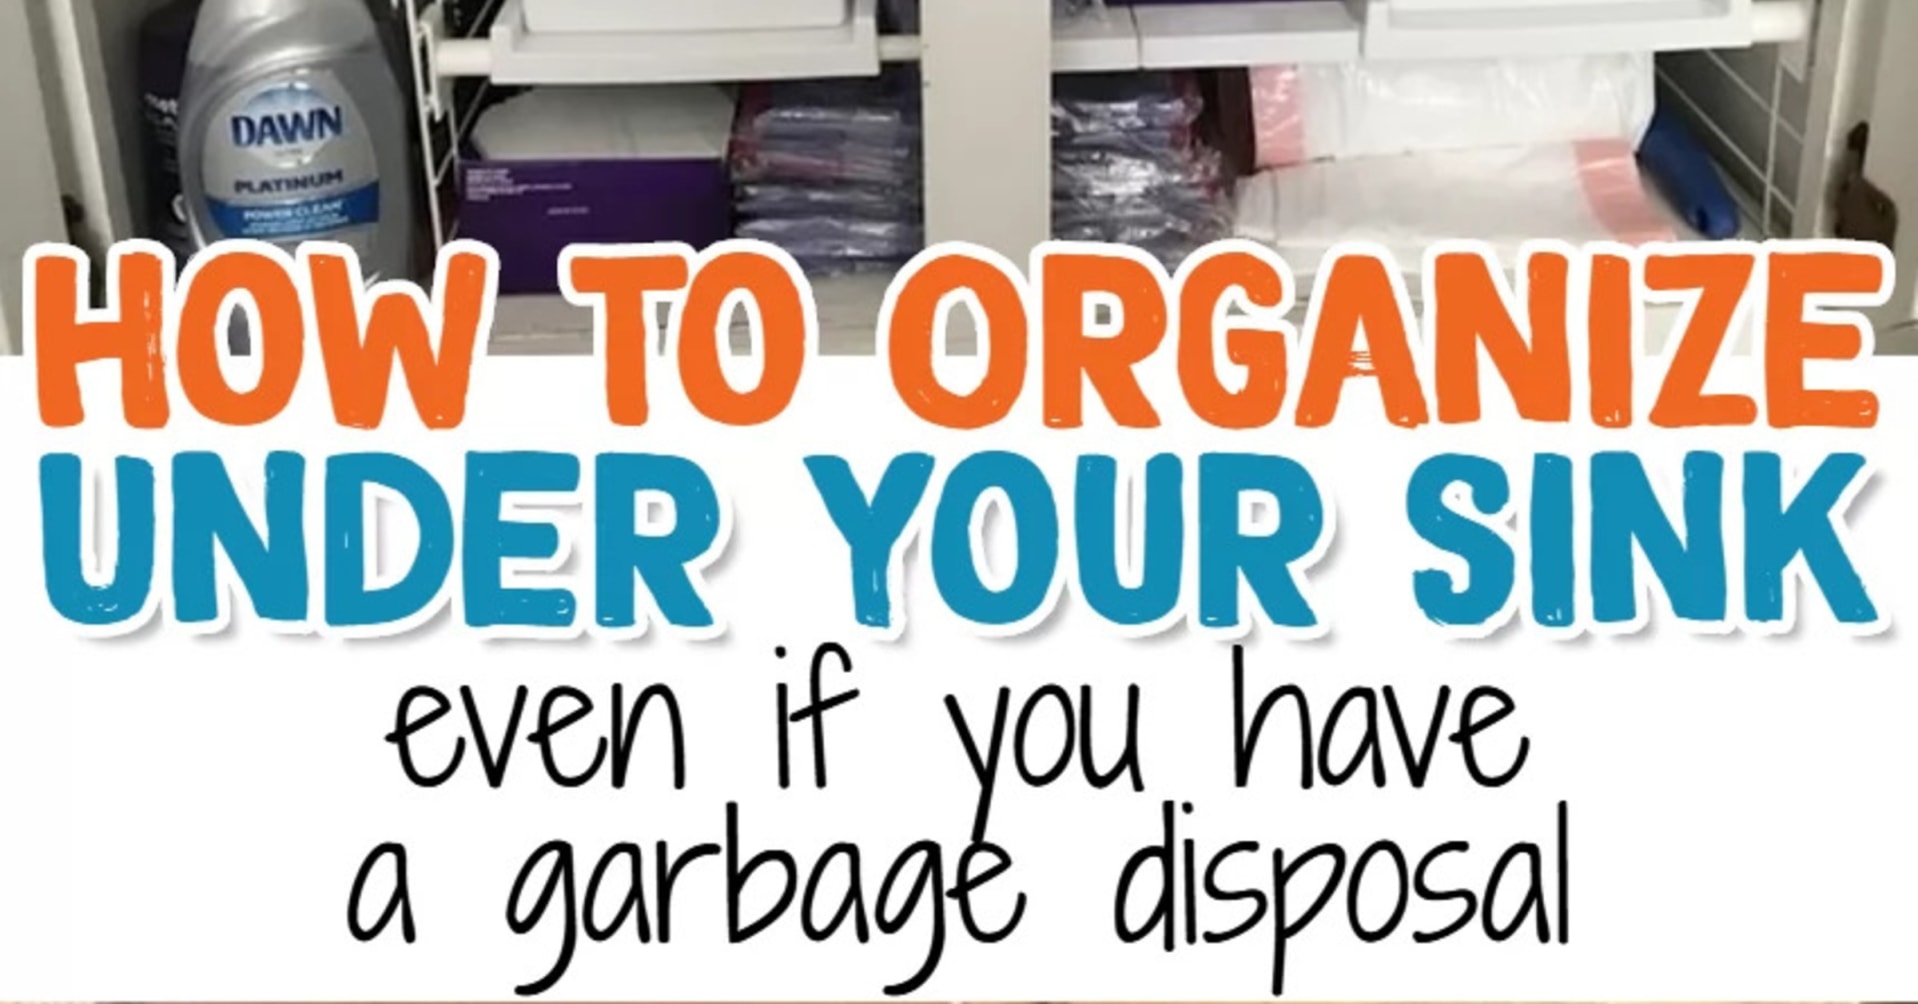 Kitchen organization hacks: how to organize under kitchen sink